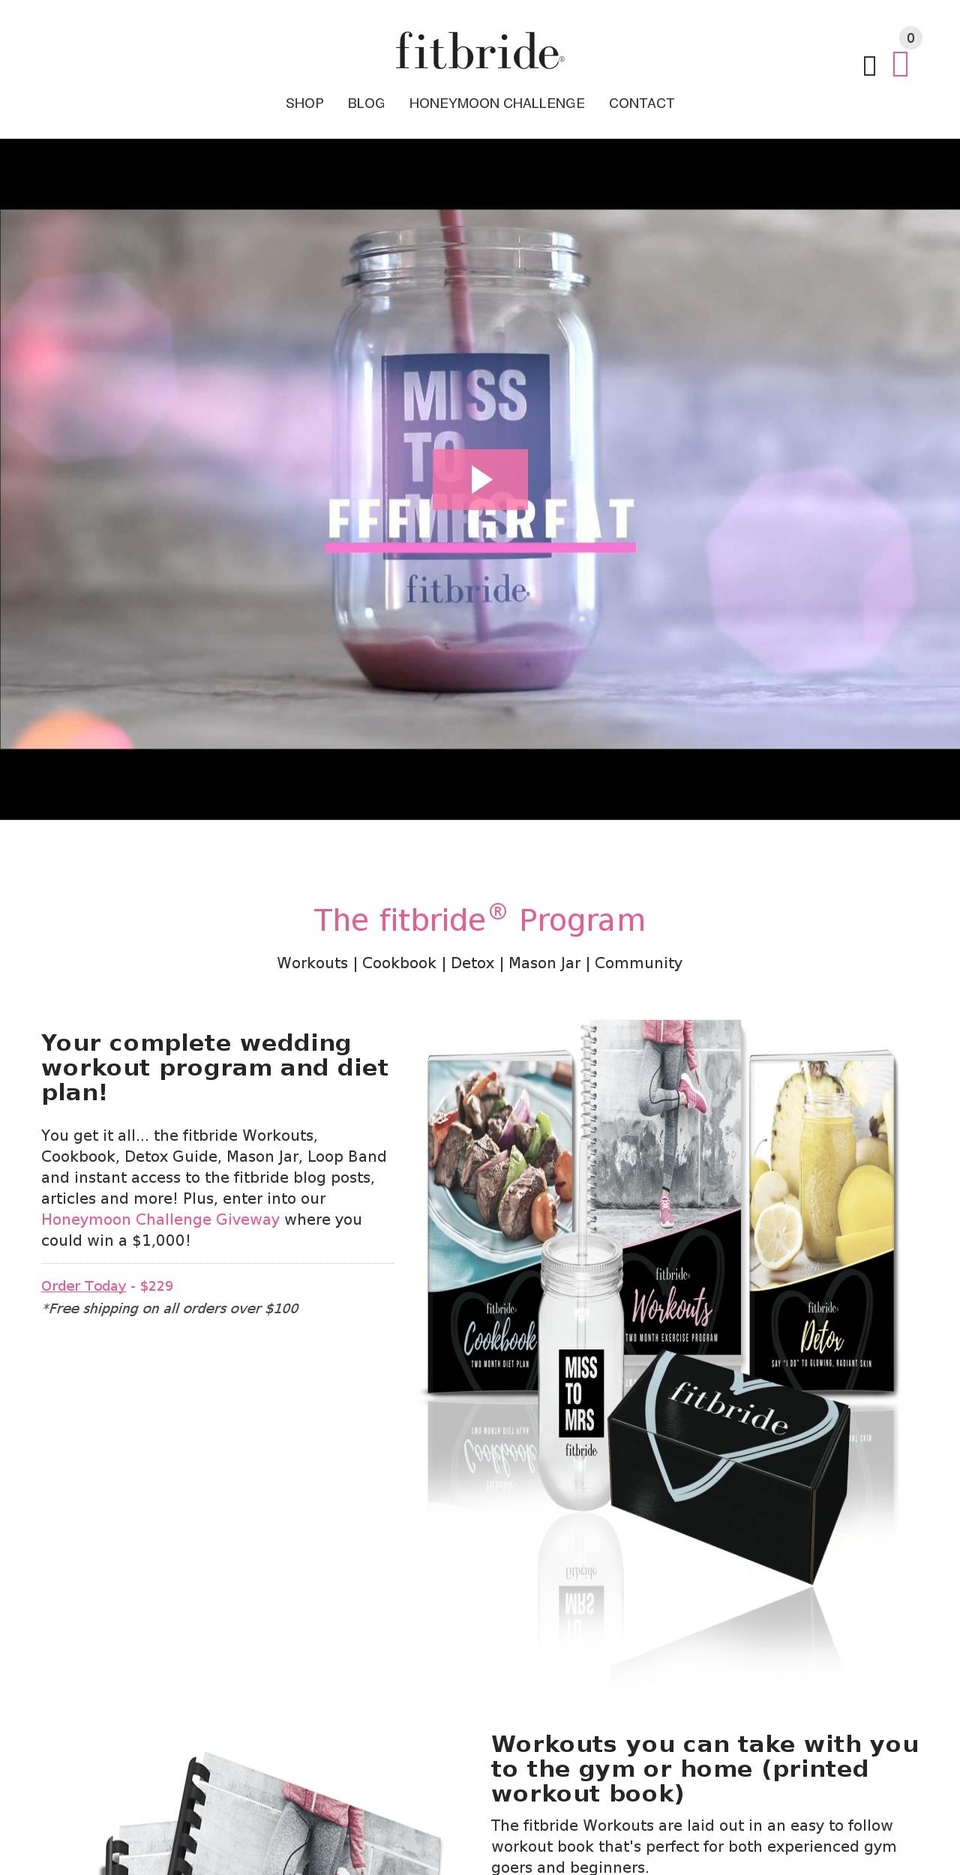 fitbridesmaid.com shopify website screenshot